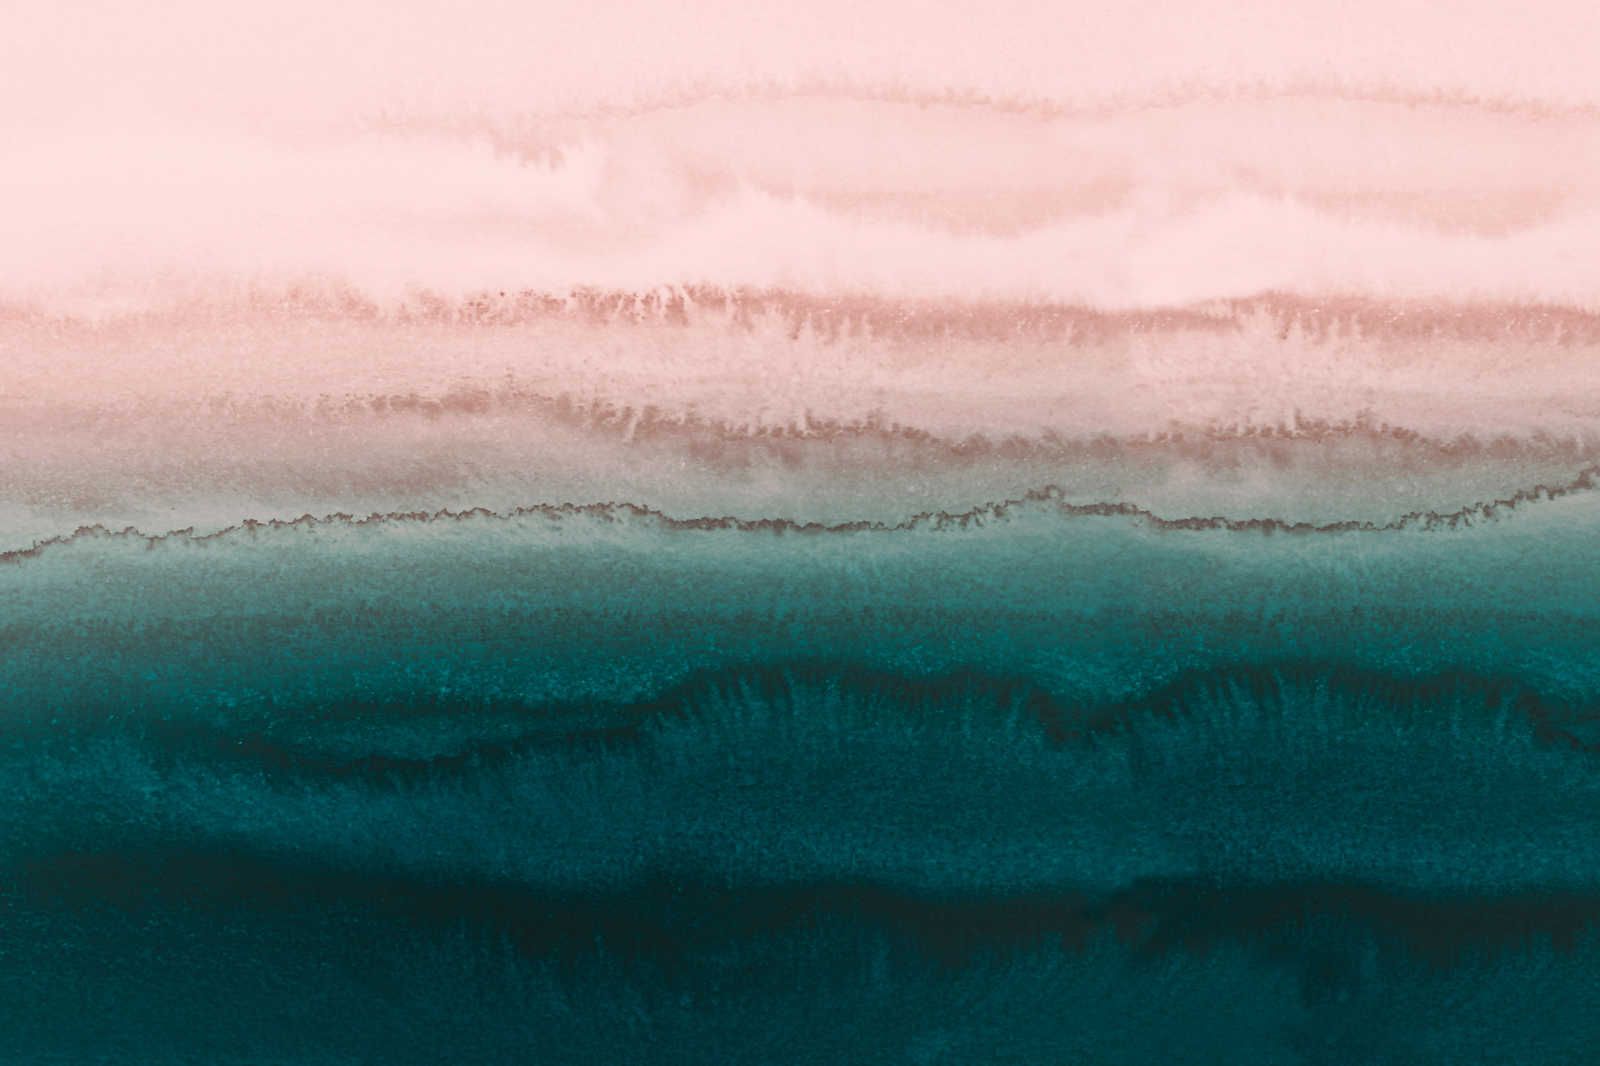             Pittura su tela con acquerello astratto Tides - 1,20 m x 0,80 m
        